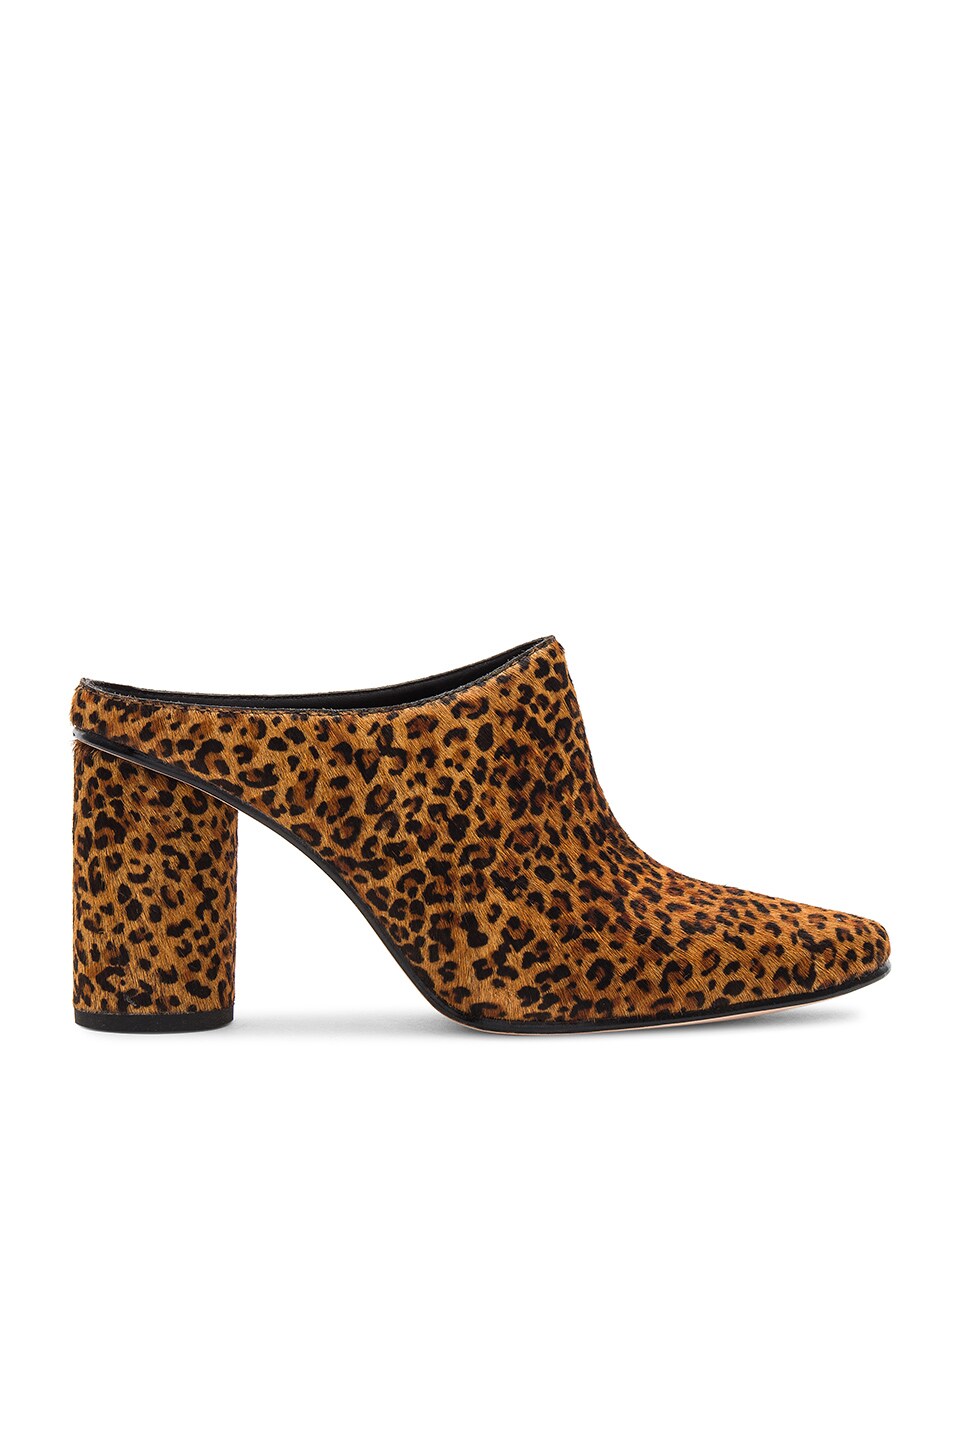 rachel comey leopard boots